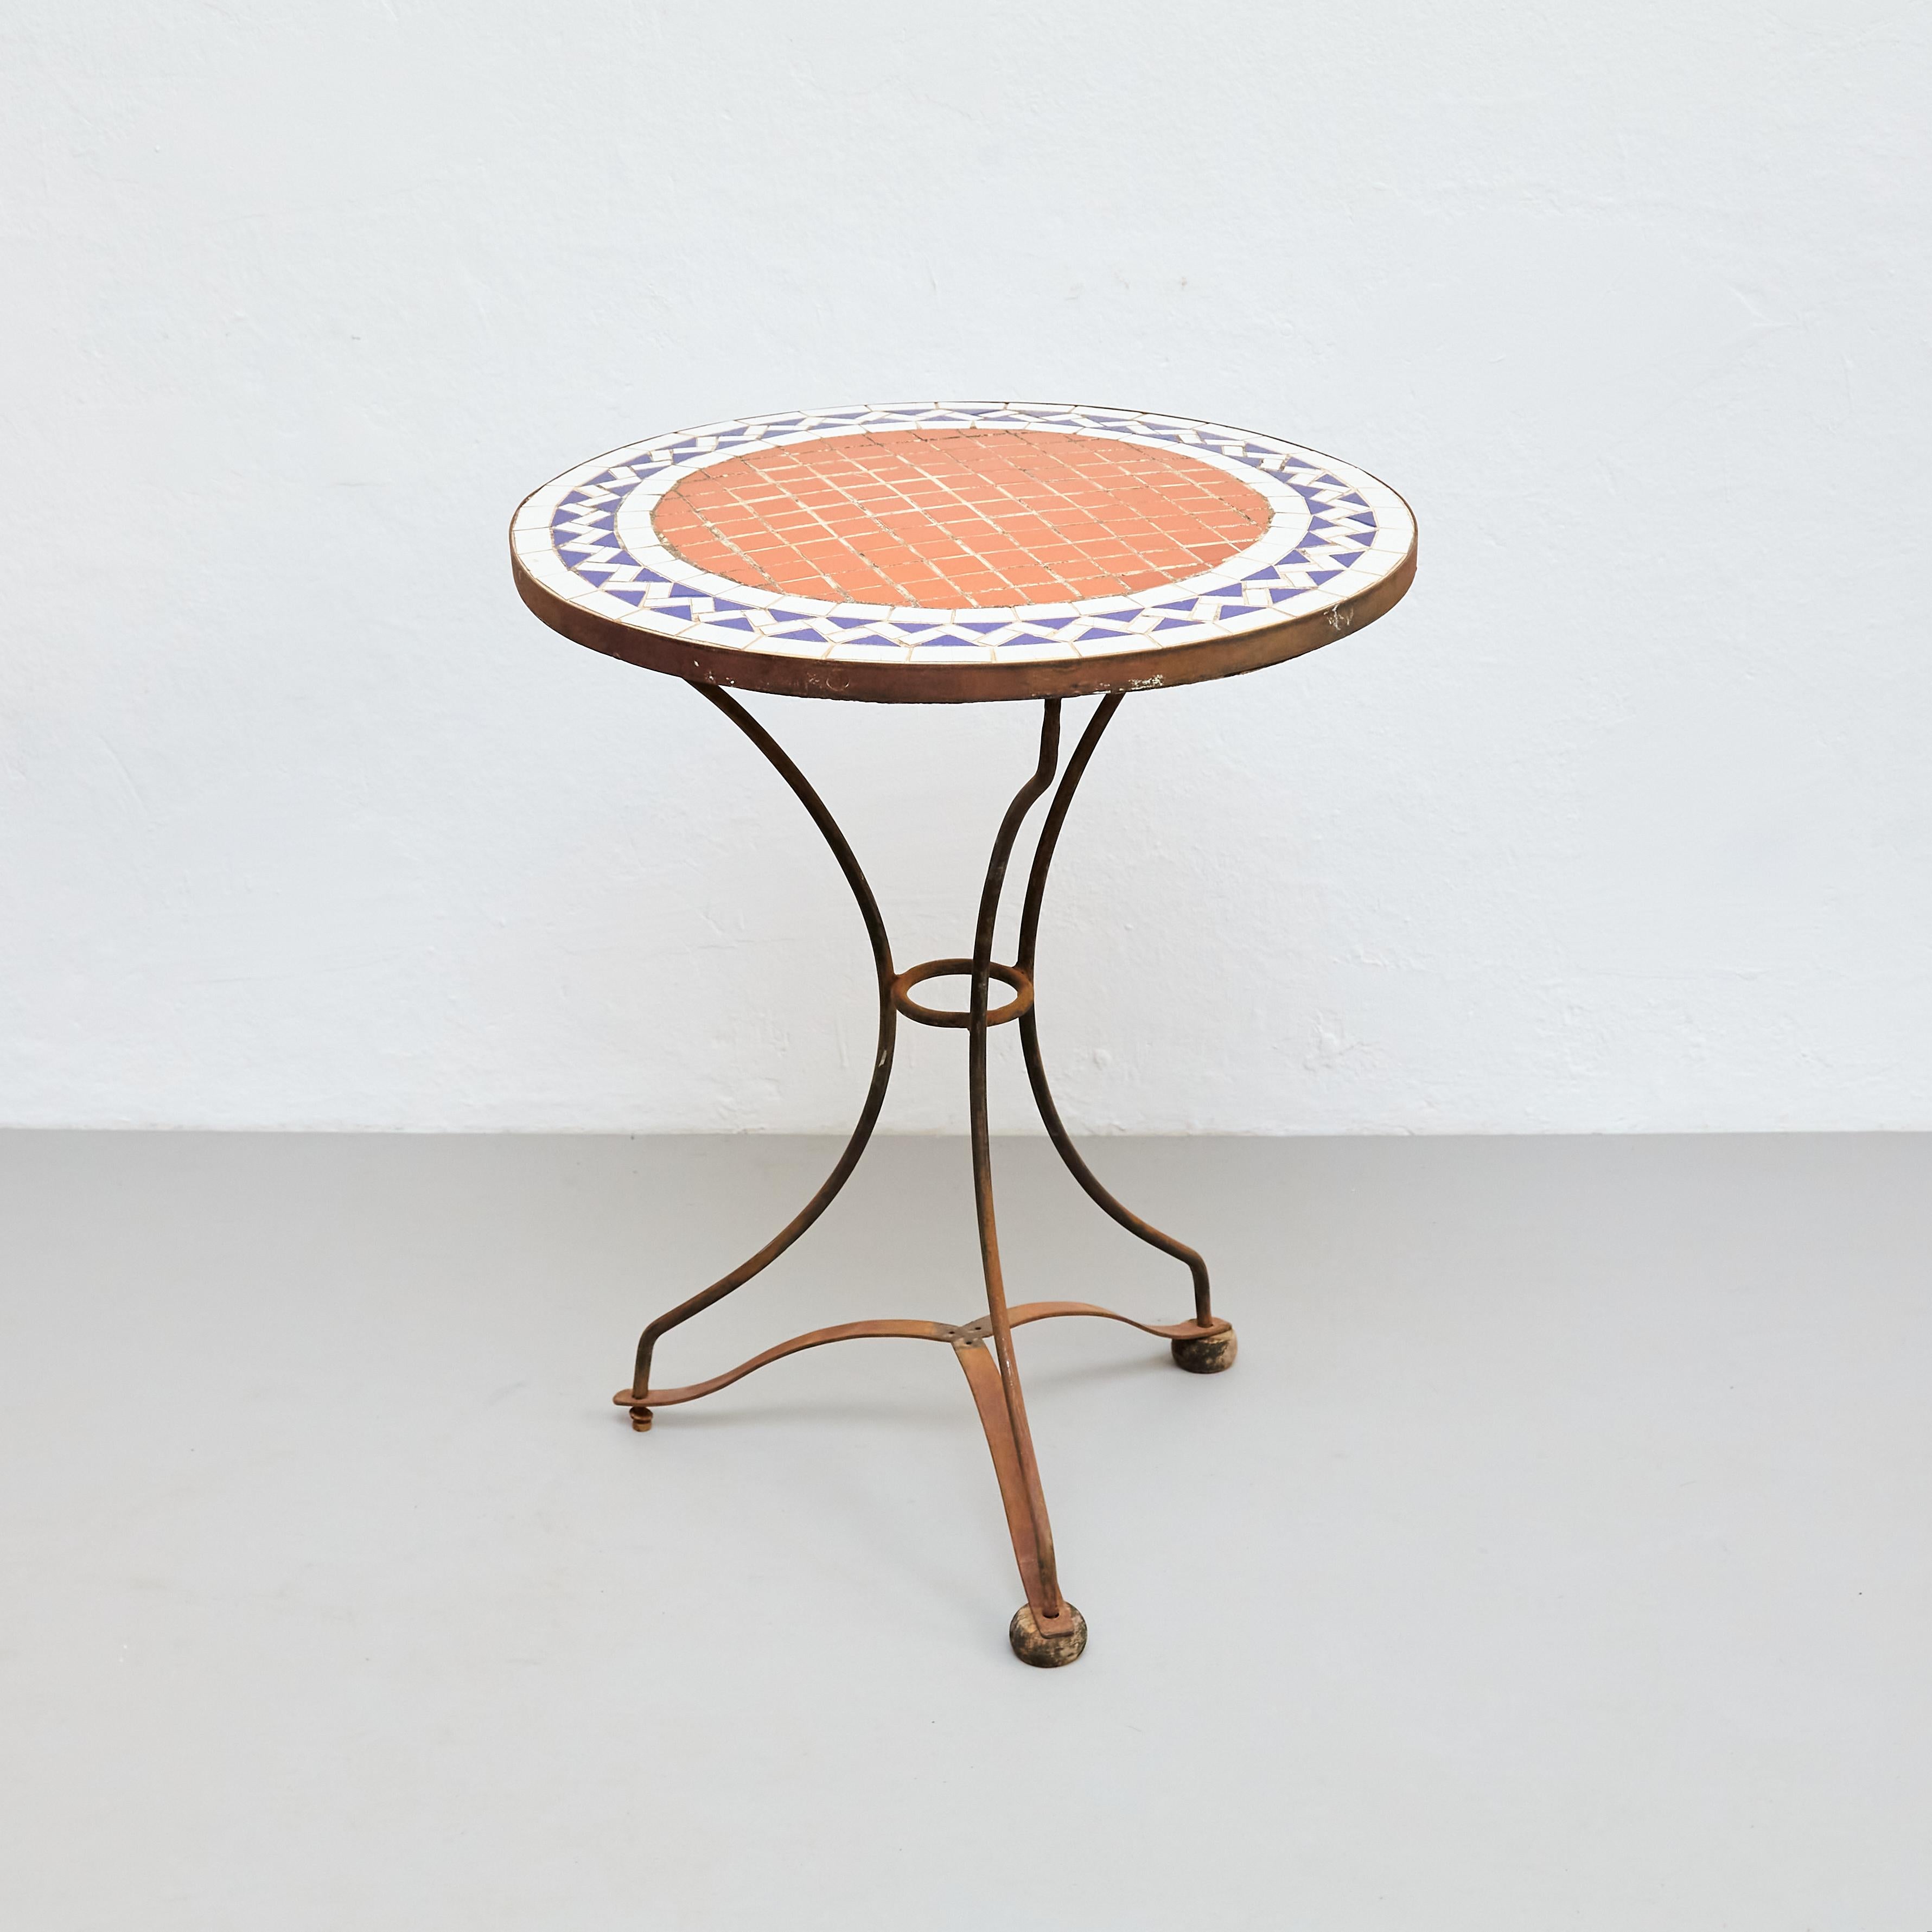 Cette table basse bistrot française en mosaïque du milieu du siècle est un meuble époustouflant, qui respire l'élégance et la sophistication. Fabriquée en France vers 1960, cette table présente un design en mosaïque unique et accrocheur qui ne